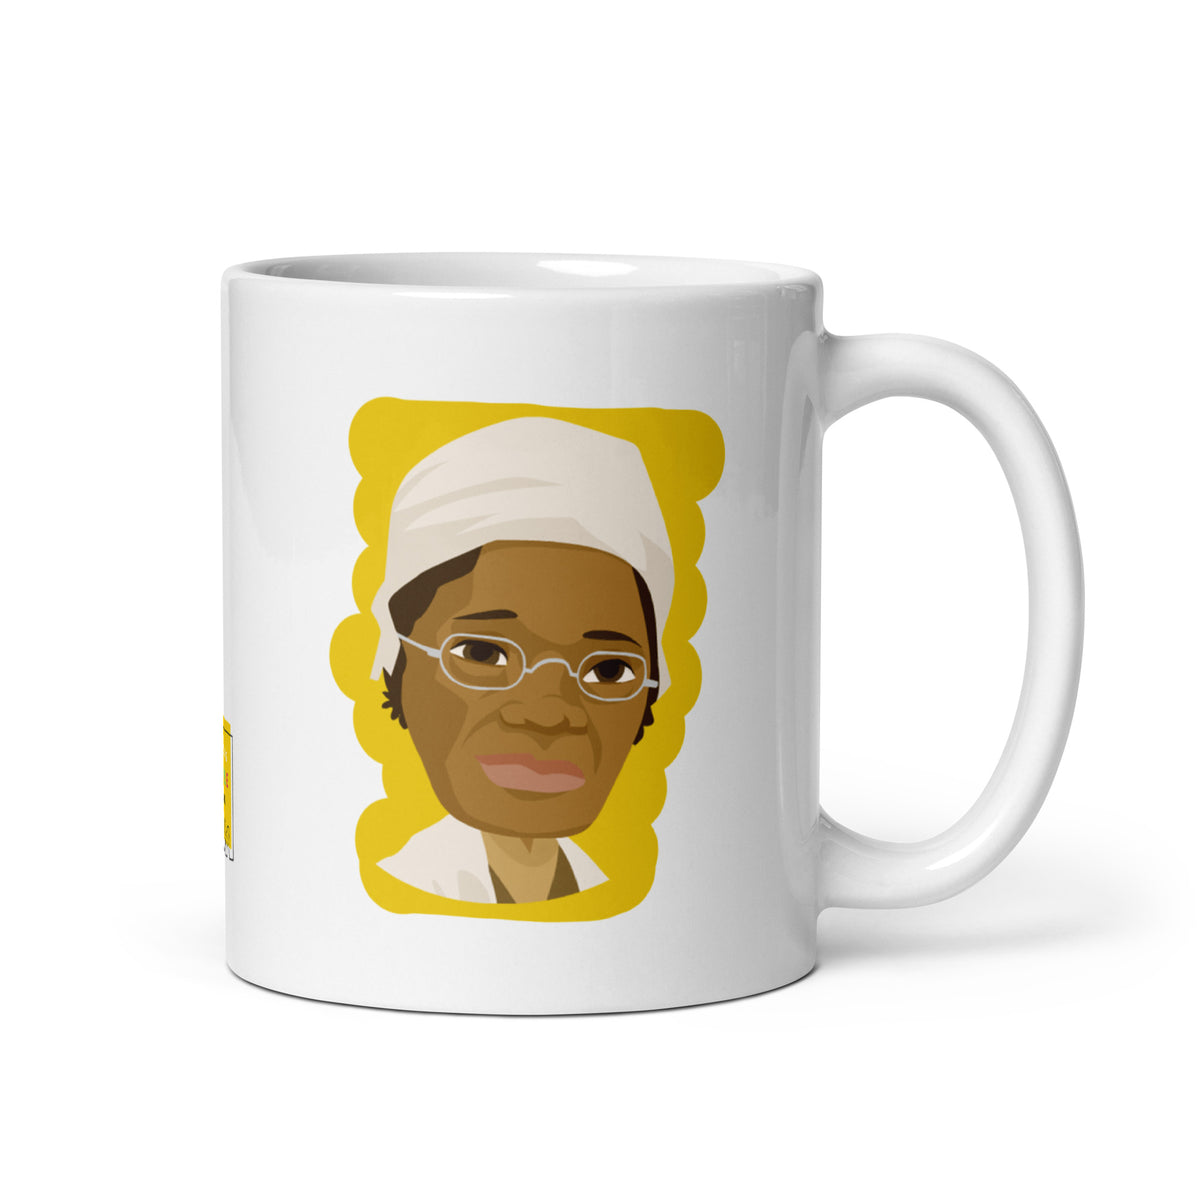 Sojourner Truth Mug